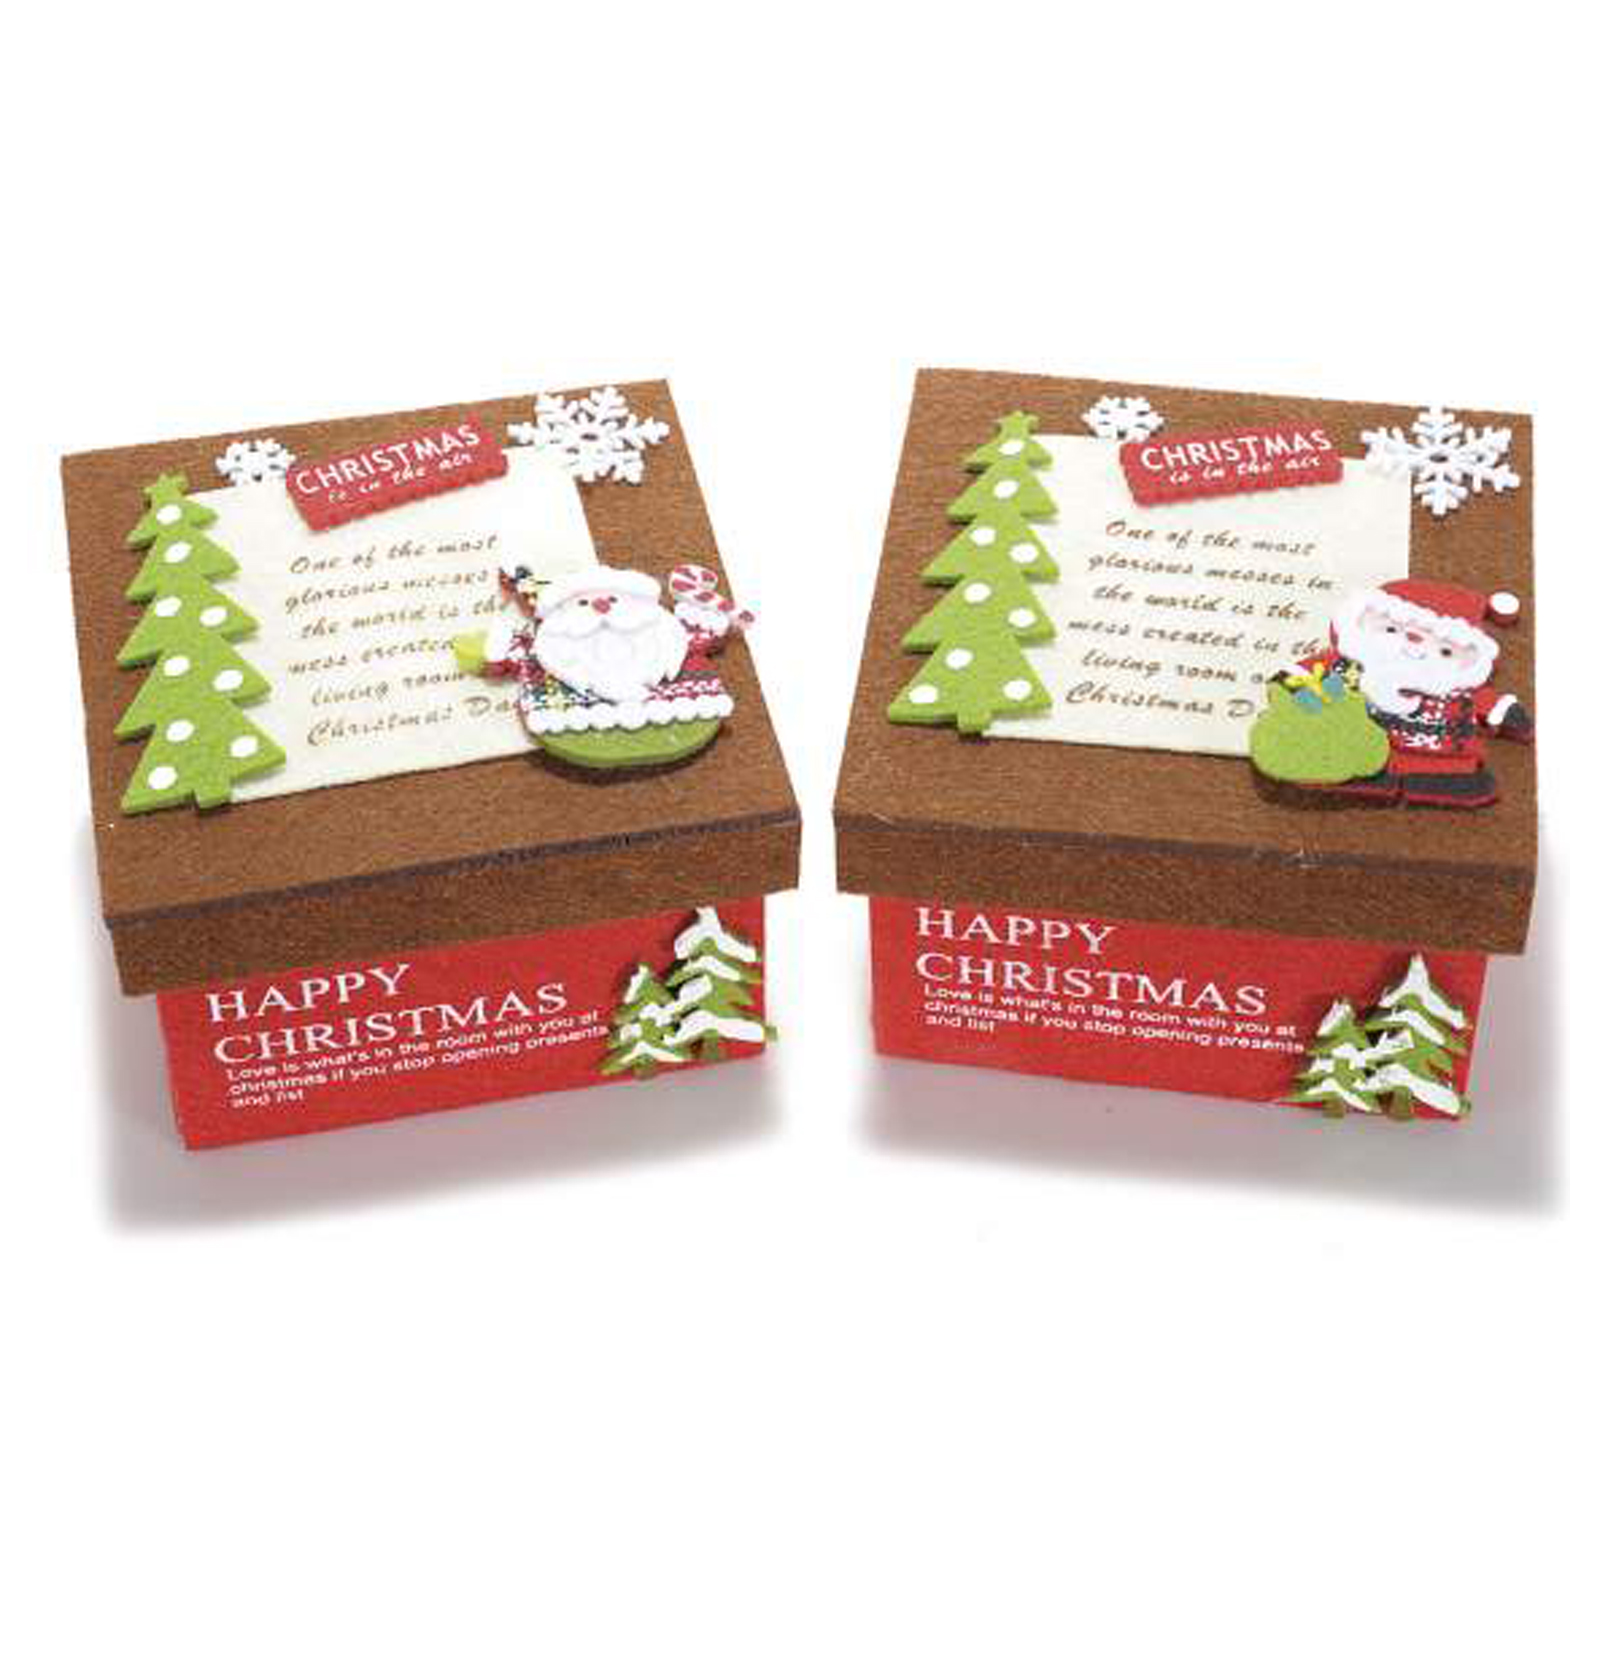 2Pz. Scatole natalizie in panno colorato con stampe e decorazioni cm 12,5 x 12,5 x 8,8 H